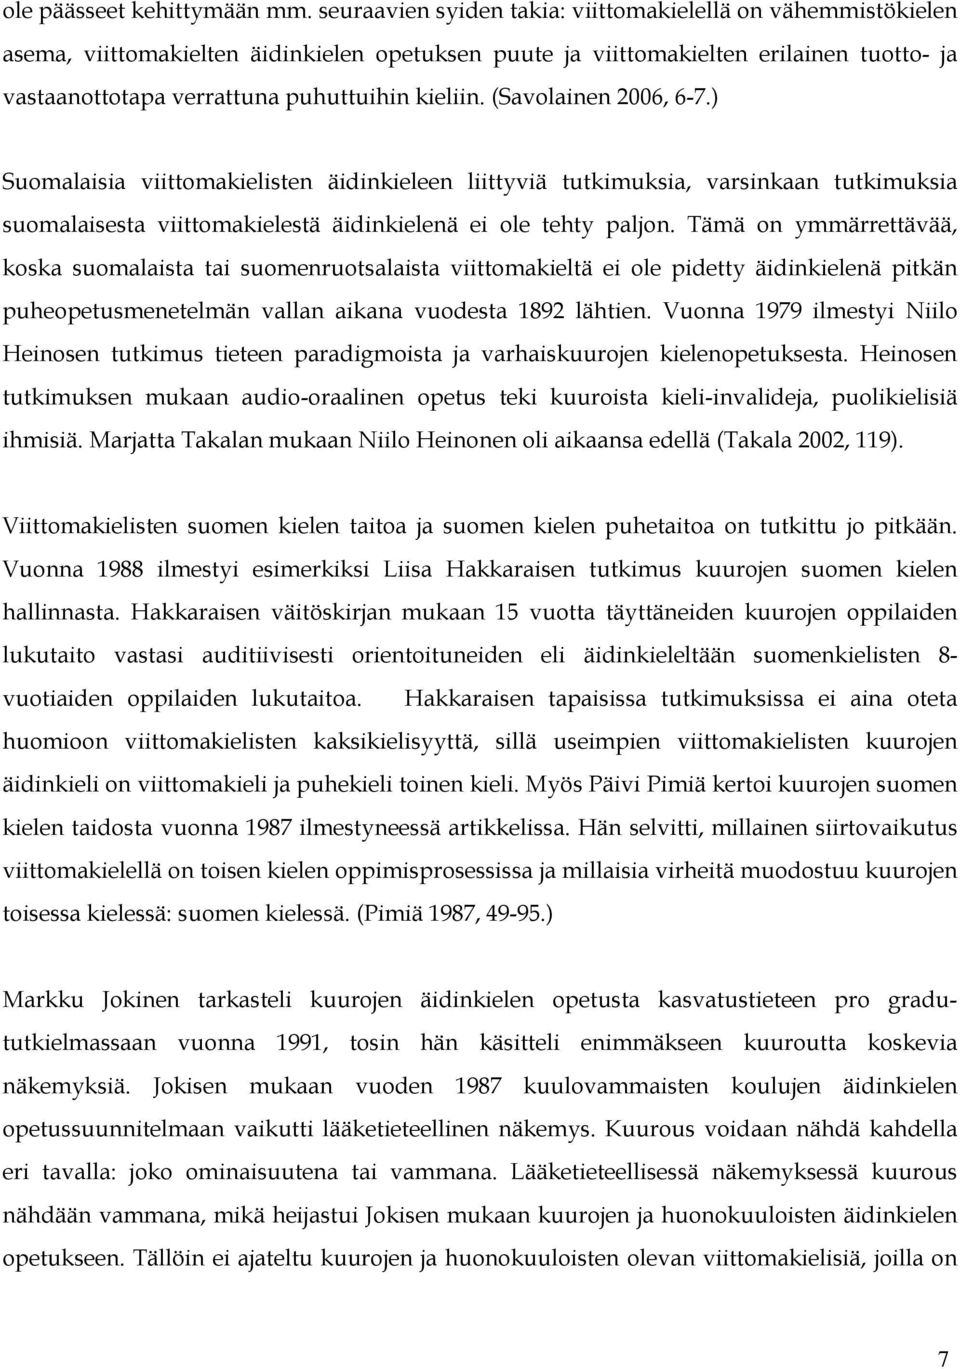 (Savolainen 2006, 6-7.) Suomalaisia viittomakielisten äidinkieleen liittyviä tutkimuksia, varsinkaan tutkimuksia suomalaisesta viittomakielestä äidinkielenä ei ole tehty paljon.